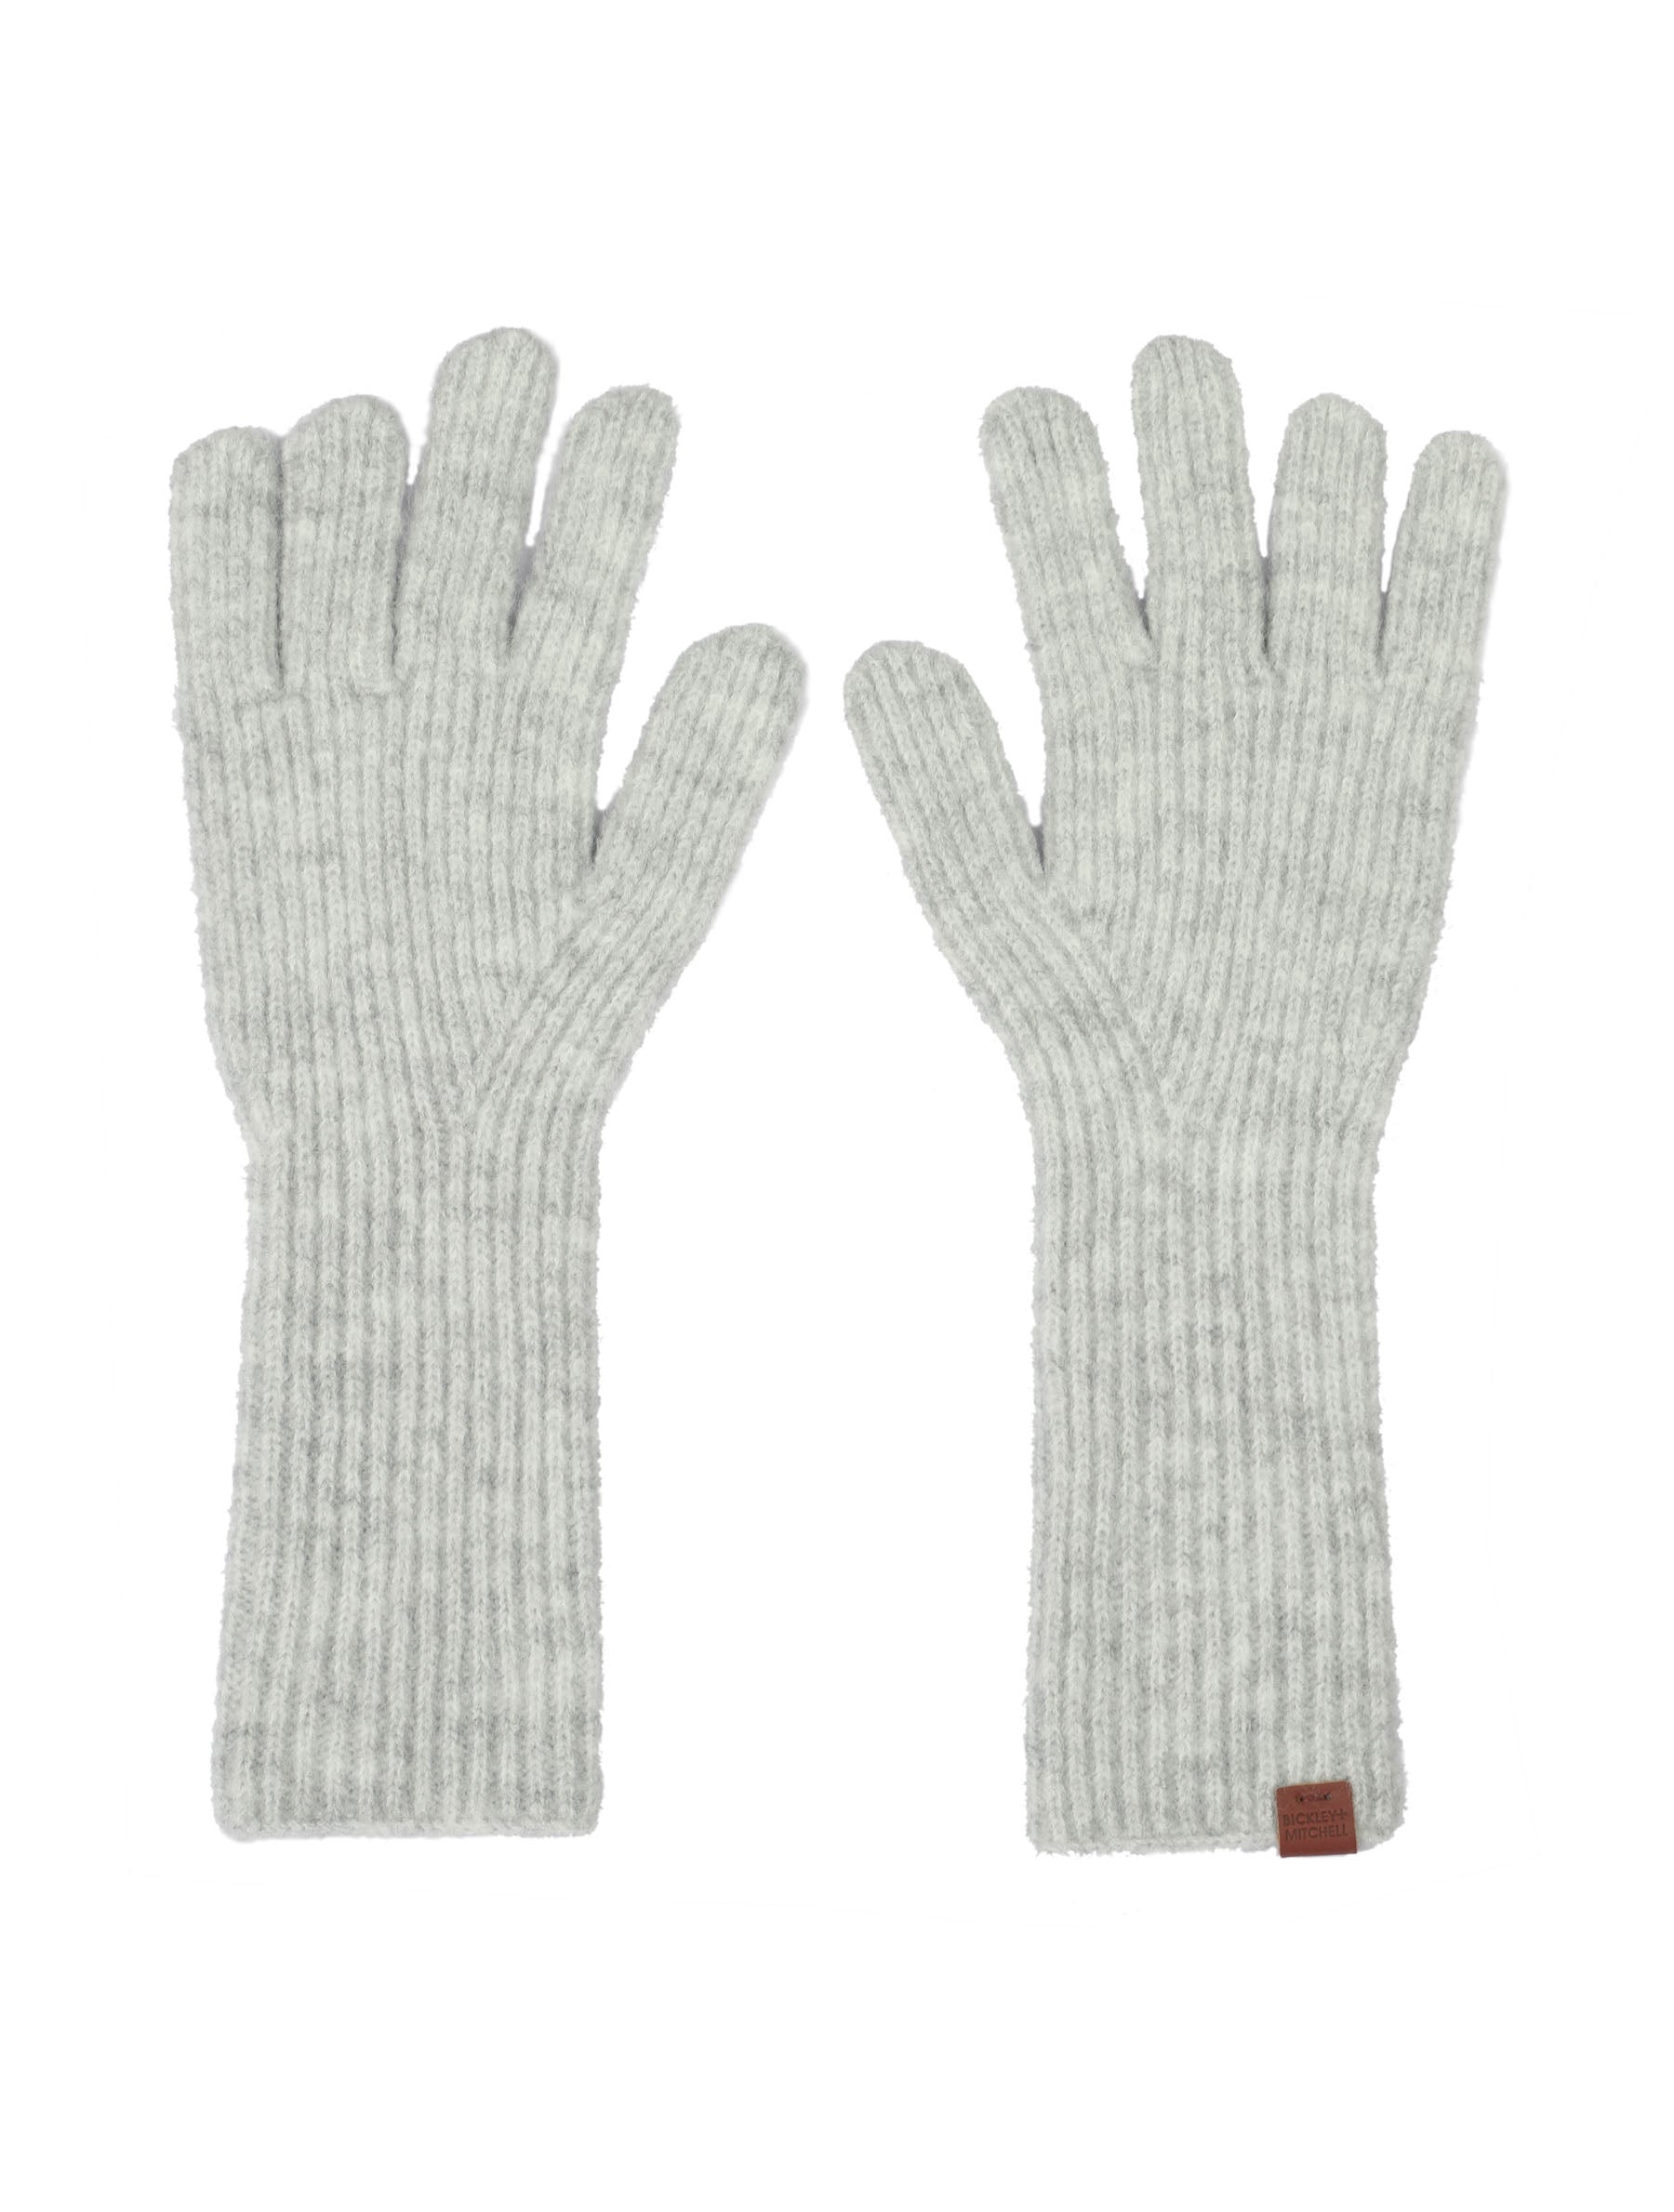 Soft rib knitted long model gloves